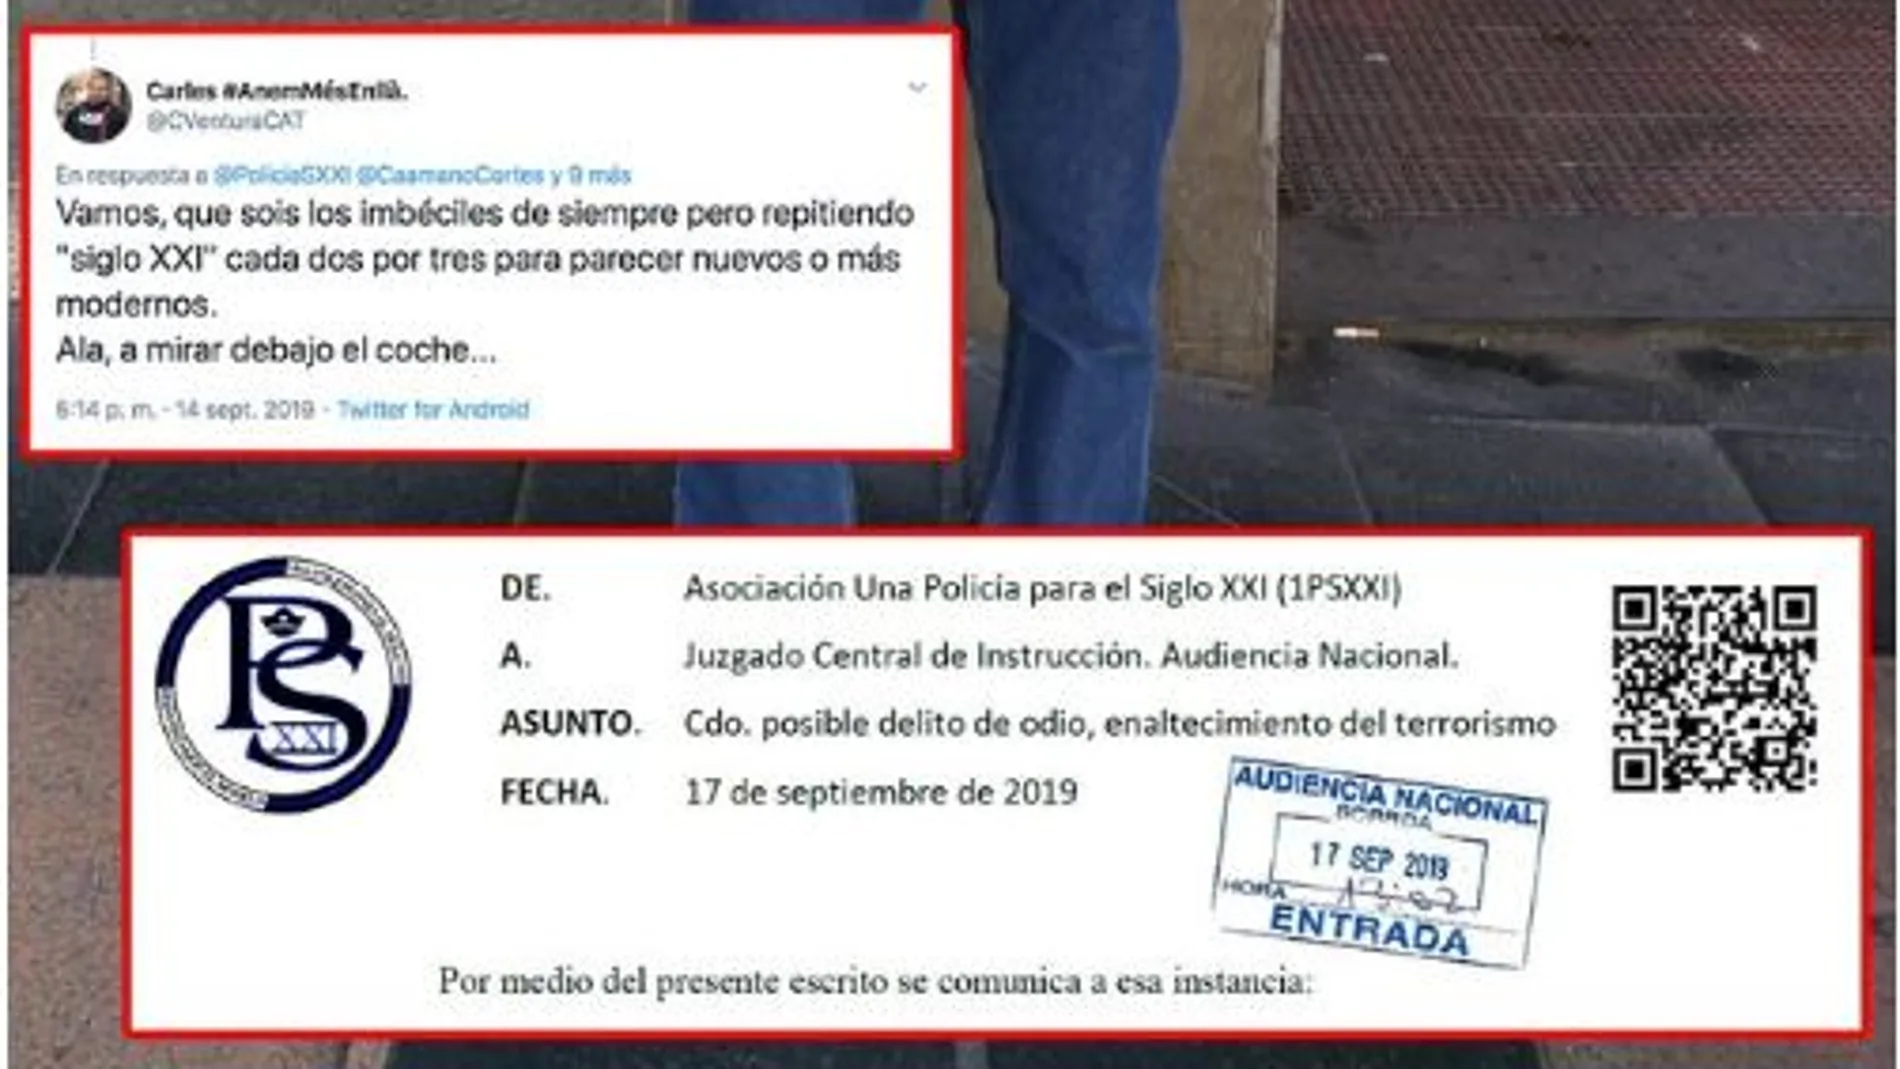 Denuncia presentada contra Carles Ventura por la asociación "Una Policía para el Siglo XXI"